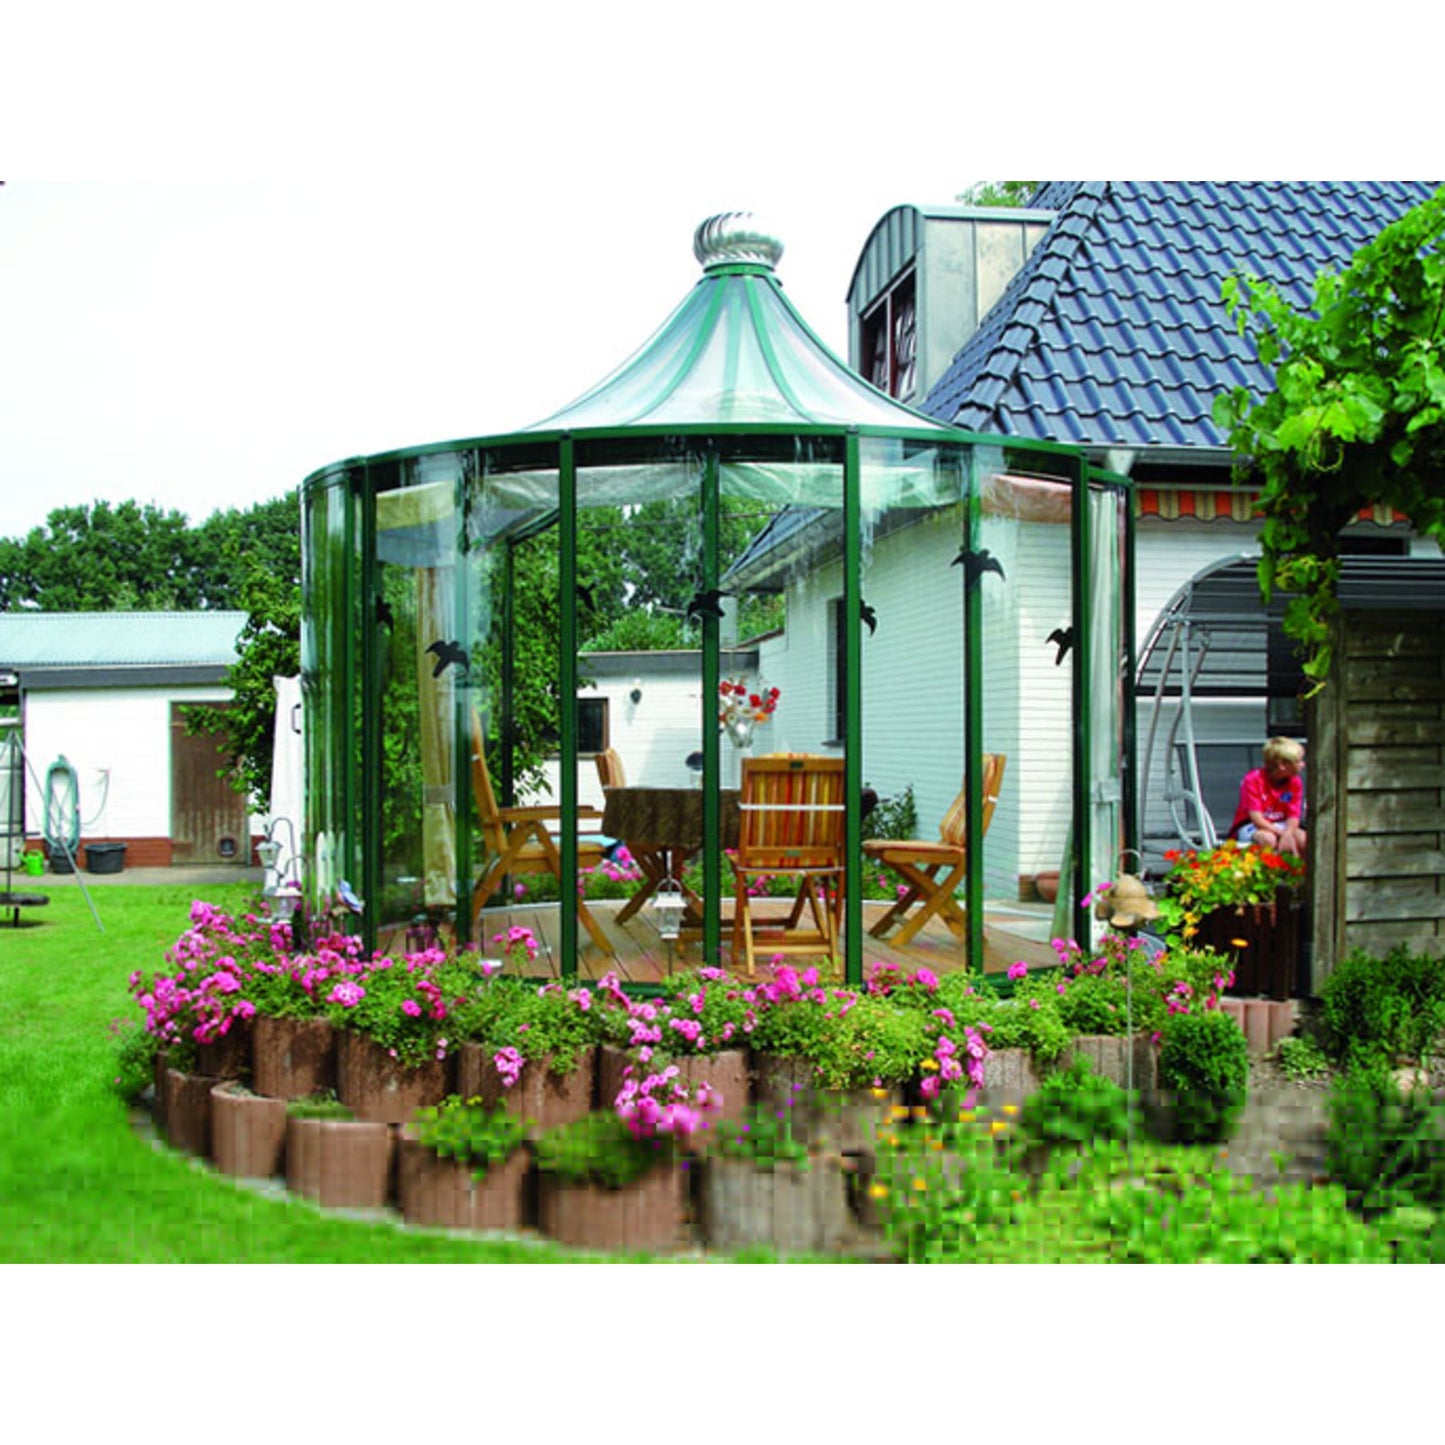 Hoklartherm | Rondo VP Garden Pavilion